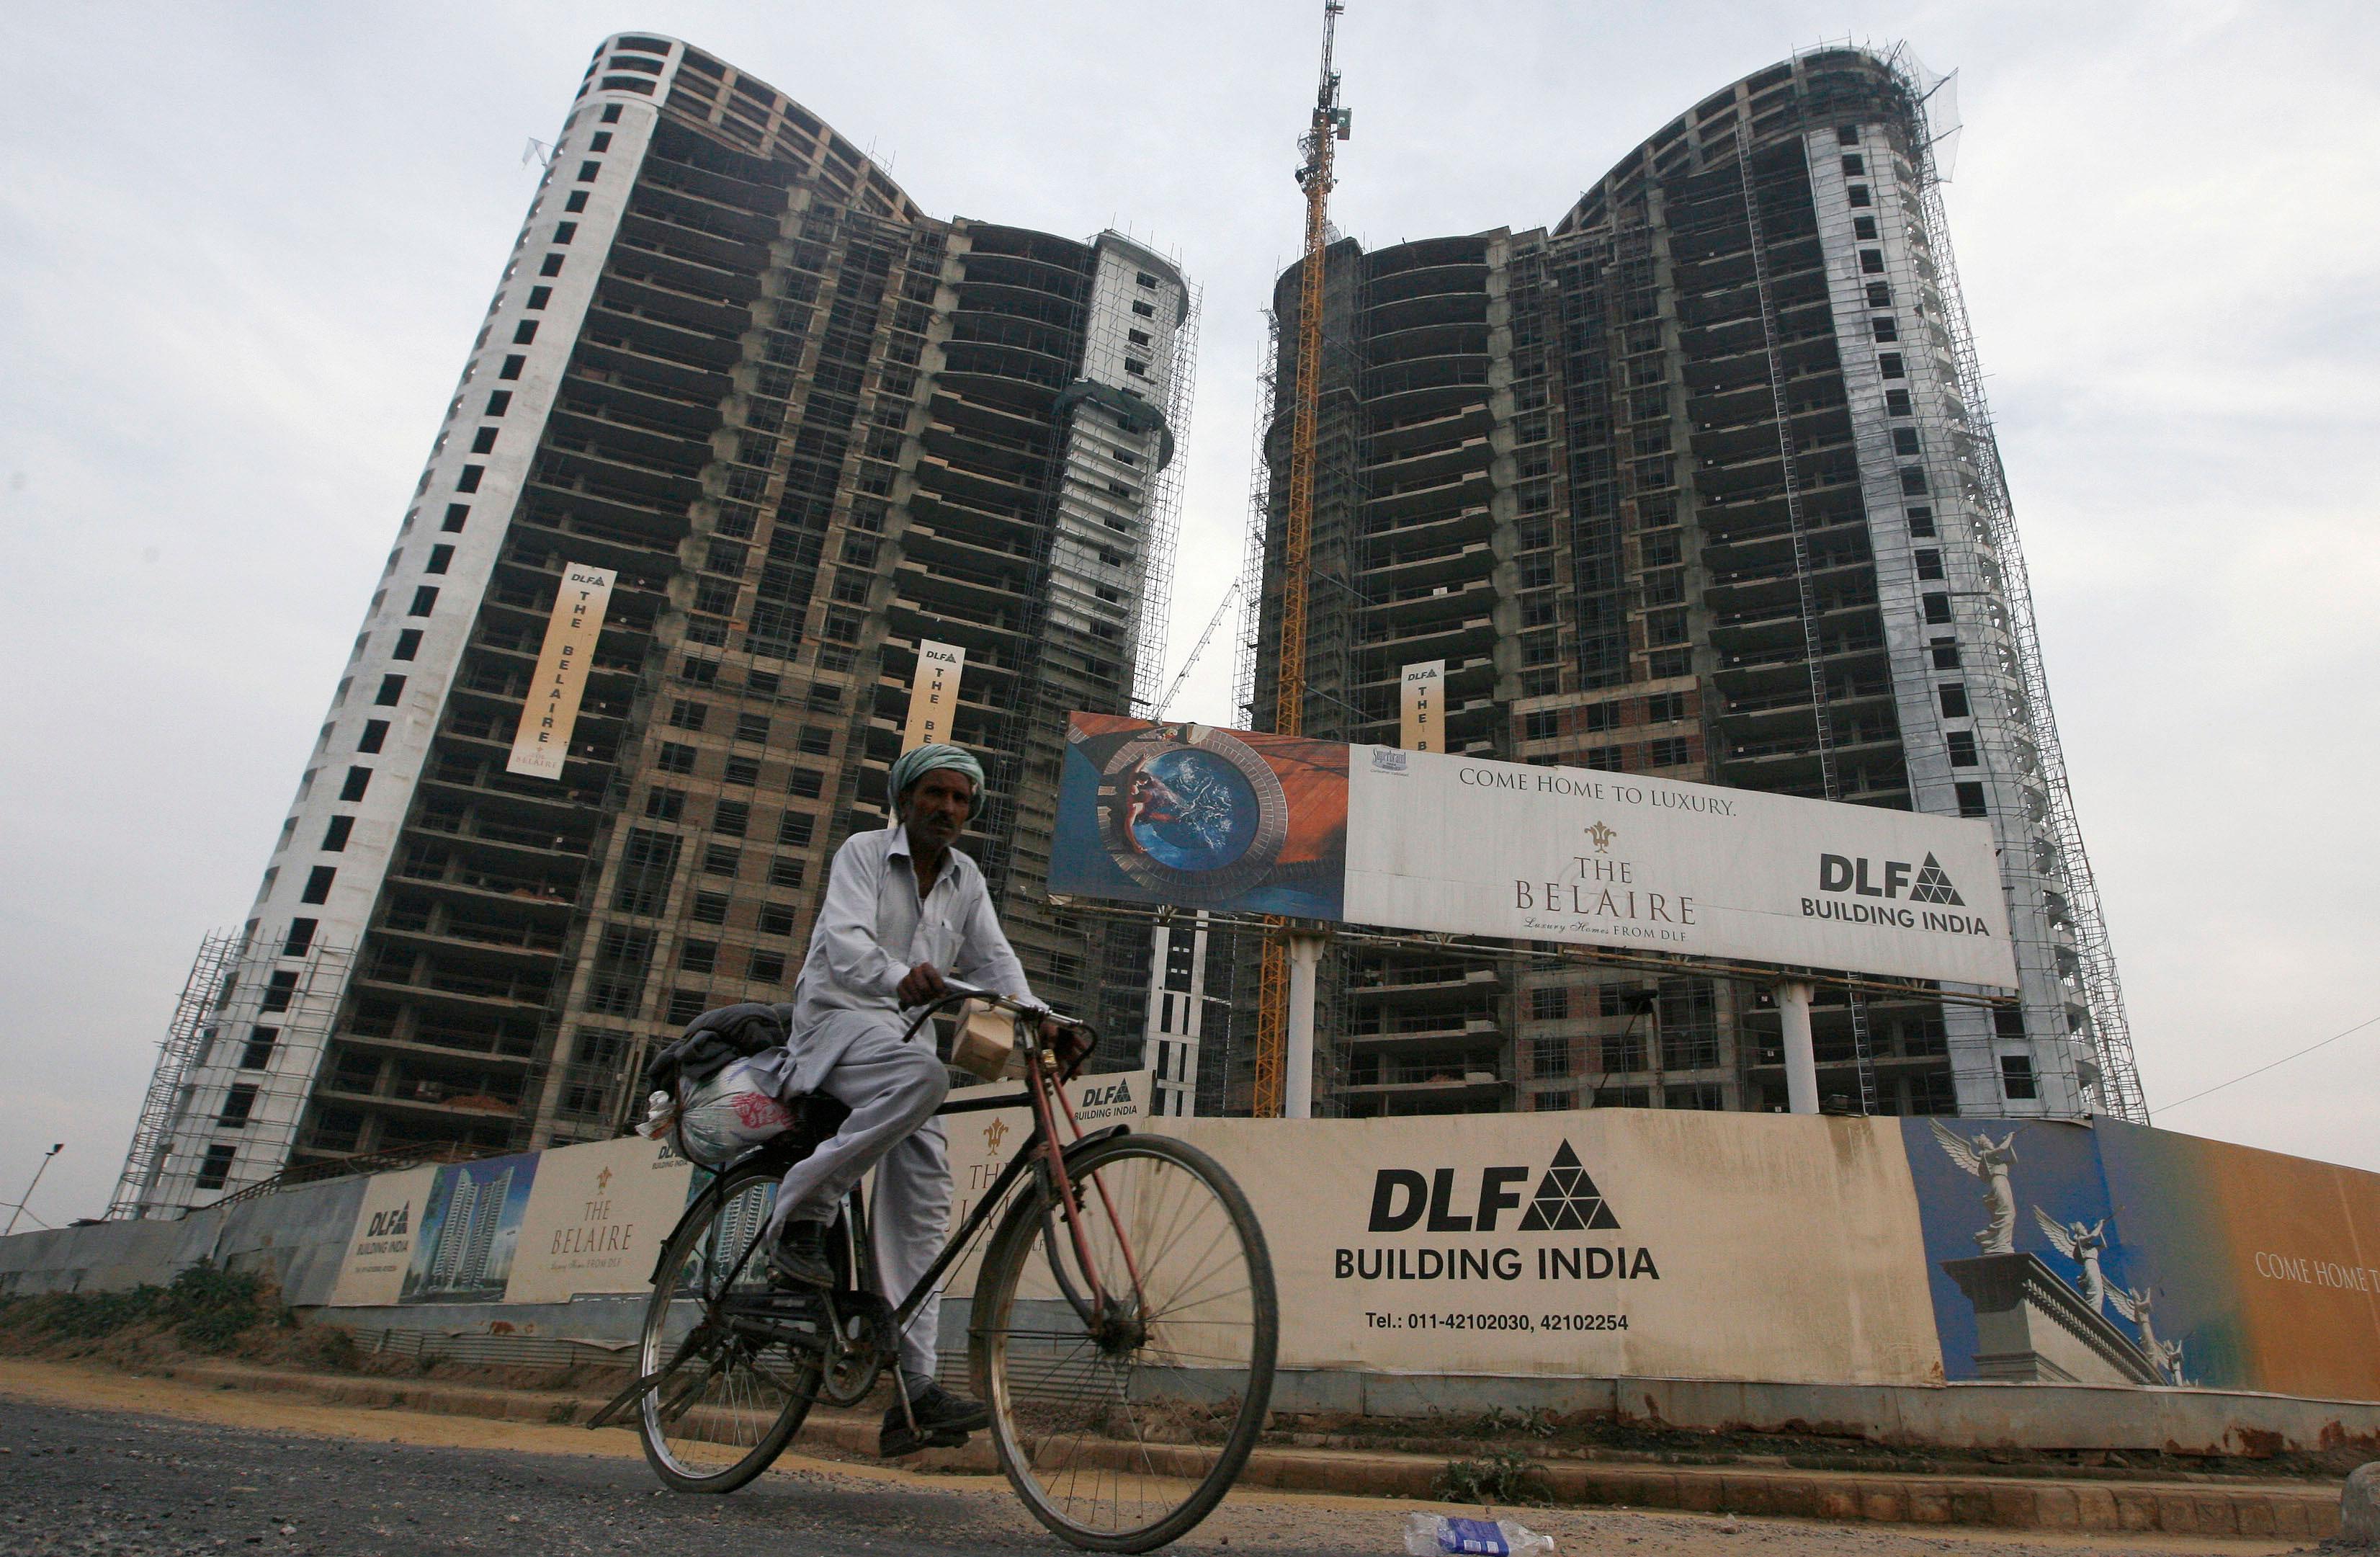 DLF raises $155M through debentures